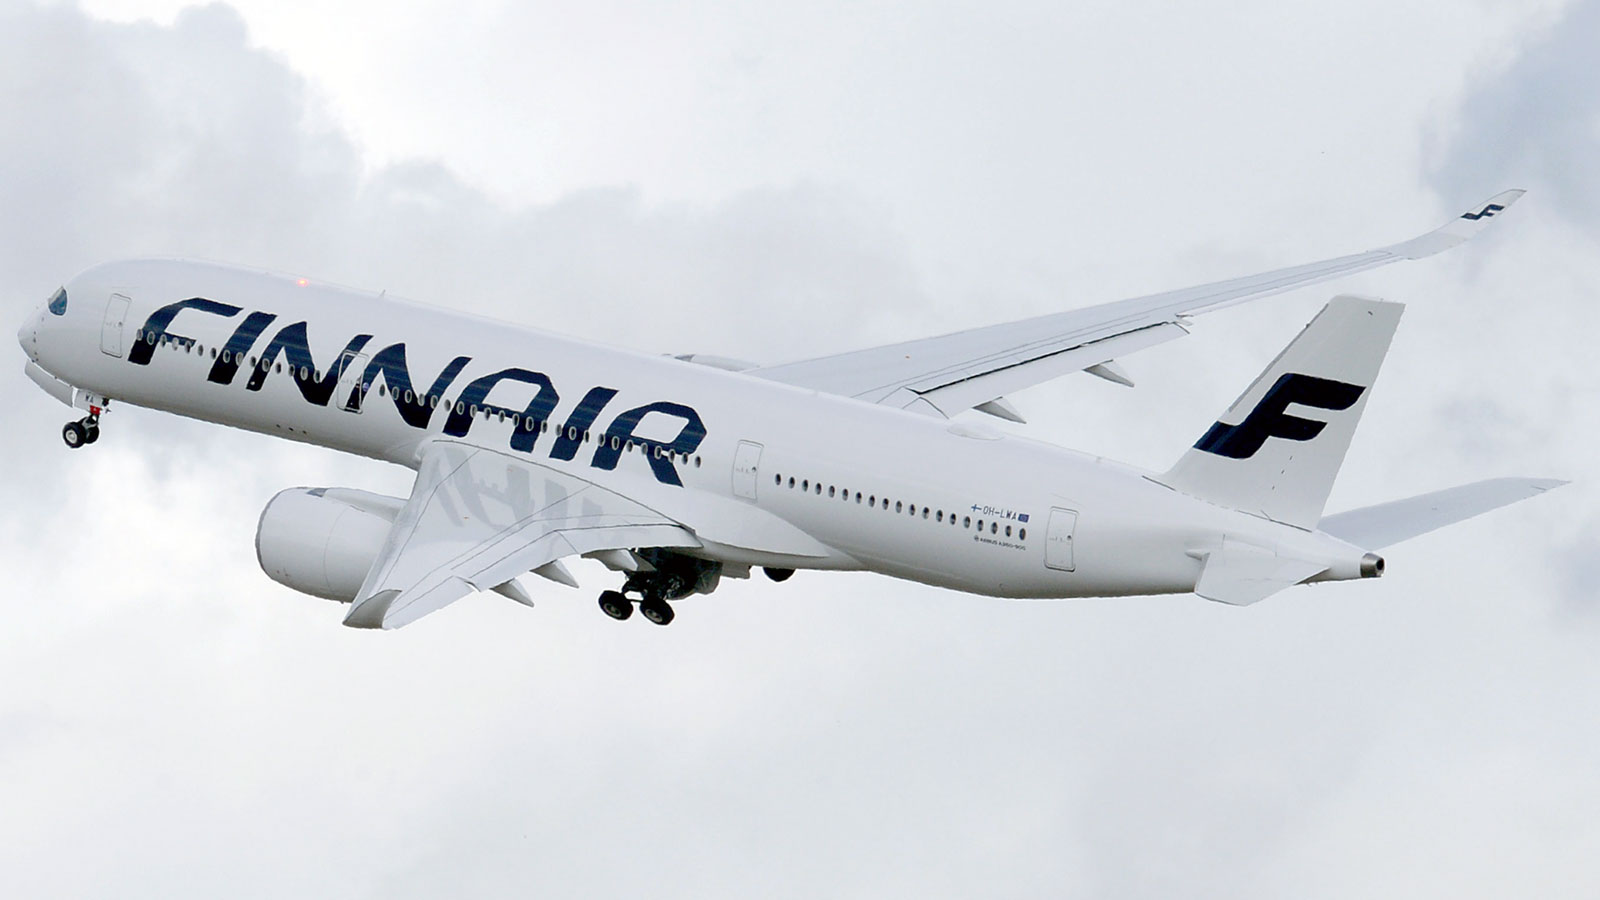 Finnair named safest airline worldwide for 2018